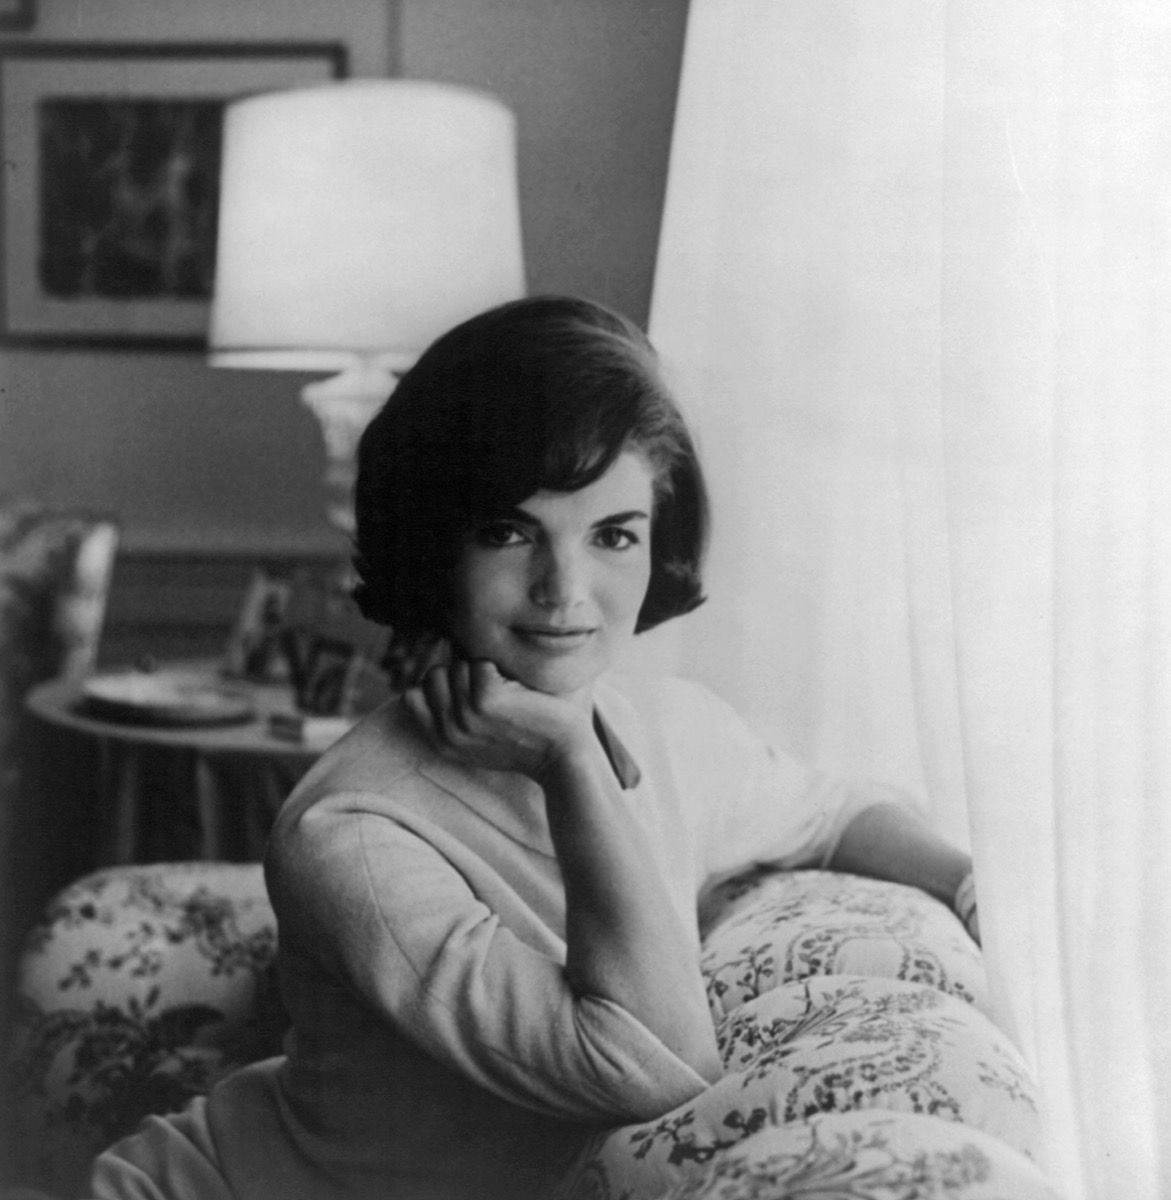 Portretul lui Jackie Kennedy, Jacqueline Kennedy Onassis cu mâna pe bărbie, sprijinită pe canapea